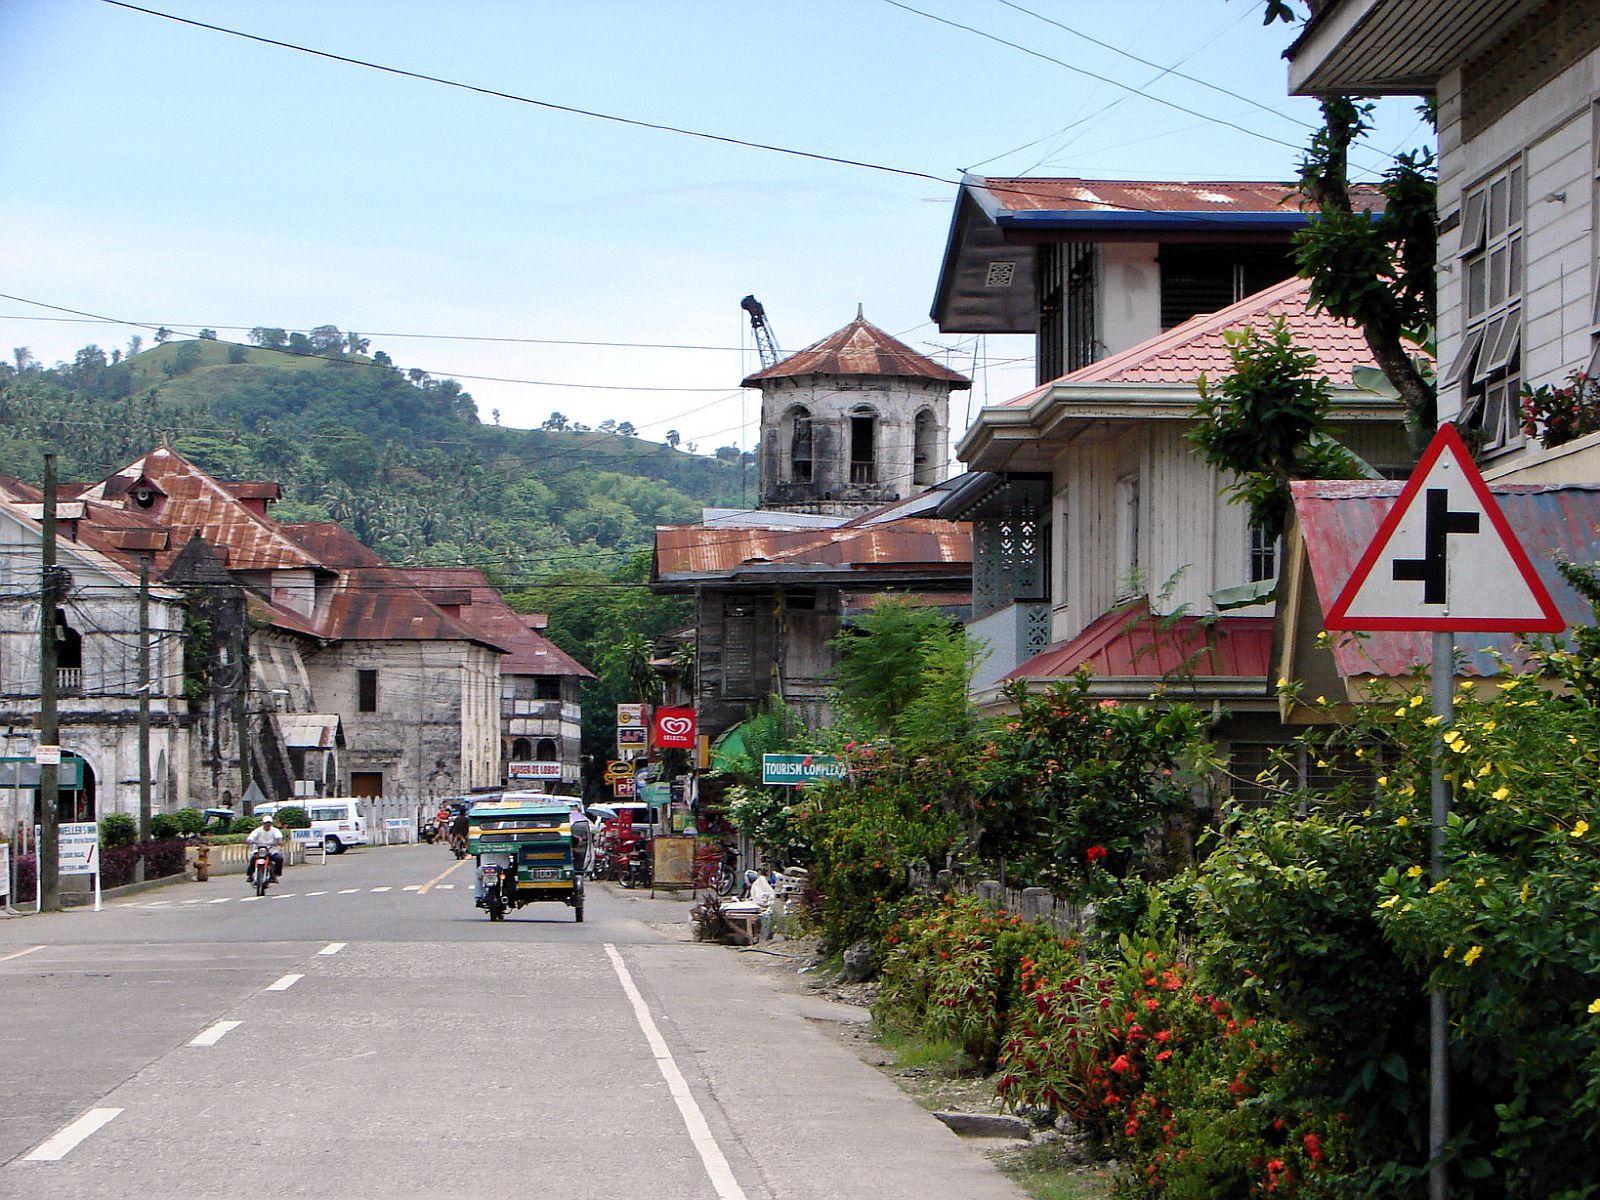 PHILIPPINEN REISEN - ORTE - BOHOL - Touristische Ortsbeschreibung für Loboc